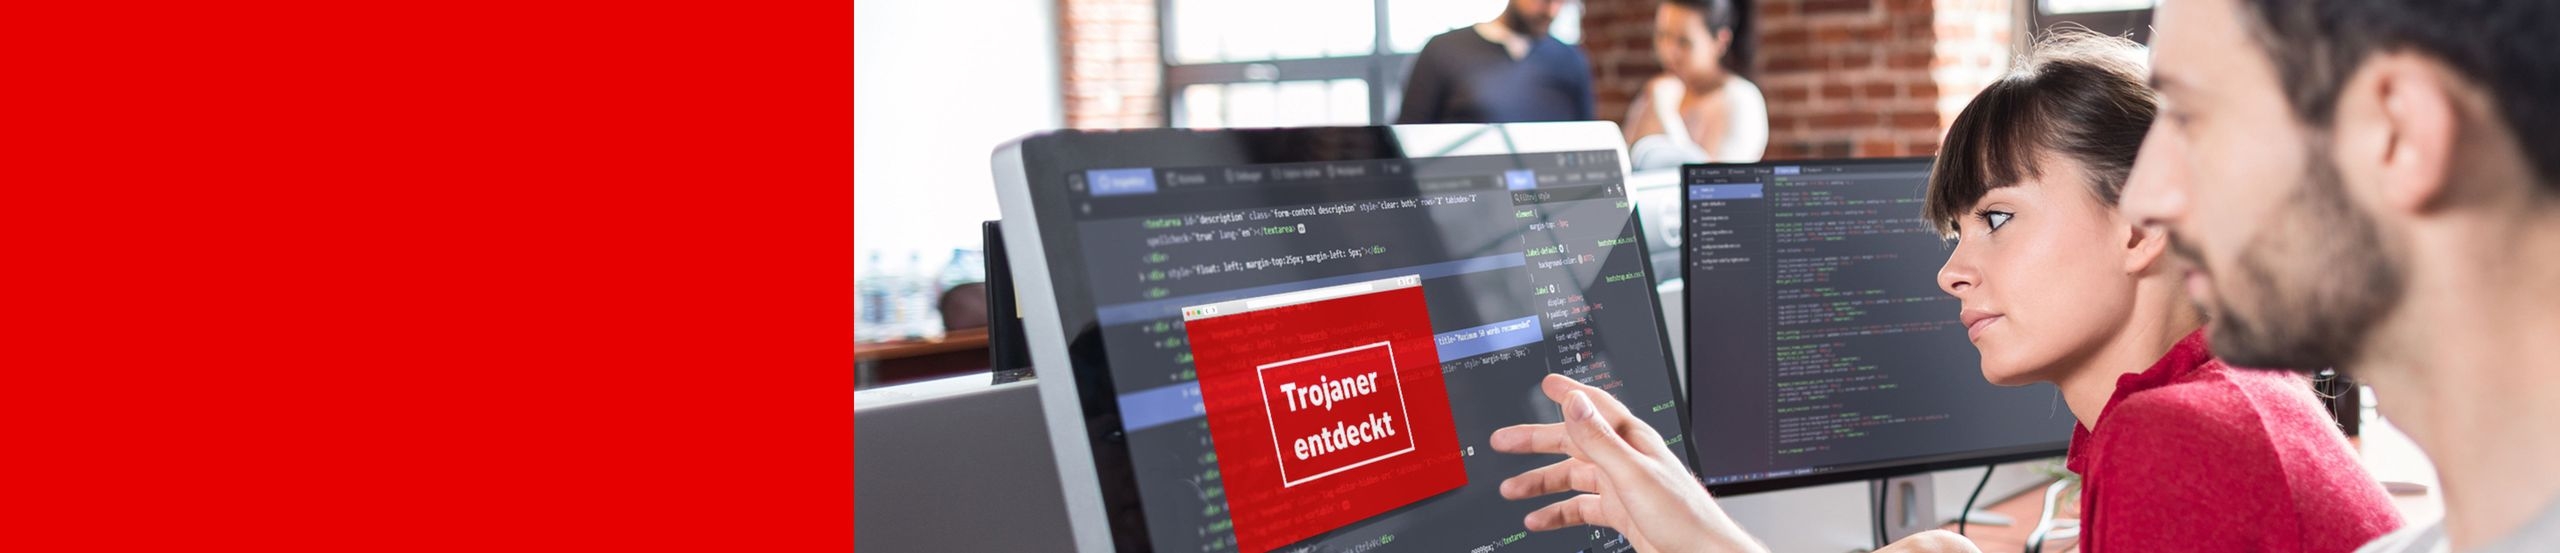 Ein Mann und eine Frau sitzen vor einem Computerbildschirm mit Programmcode. Auf dem Bildschirm der Warnhinweis „Trojaner entdeckt“.